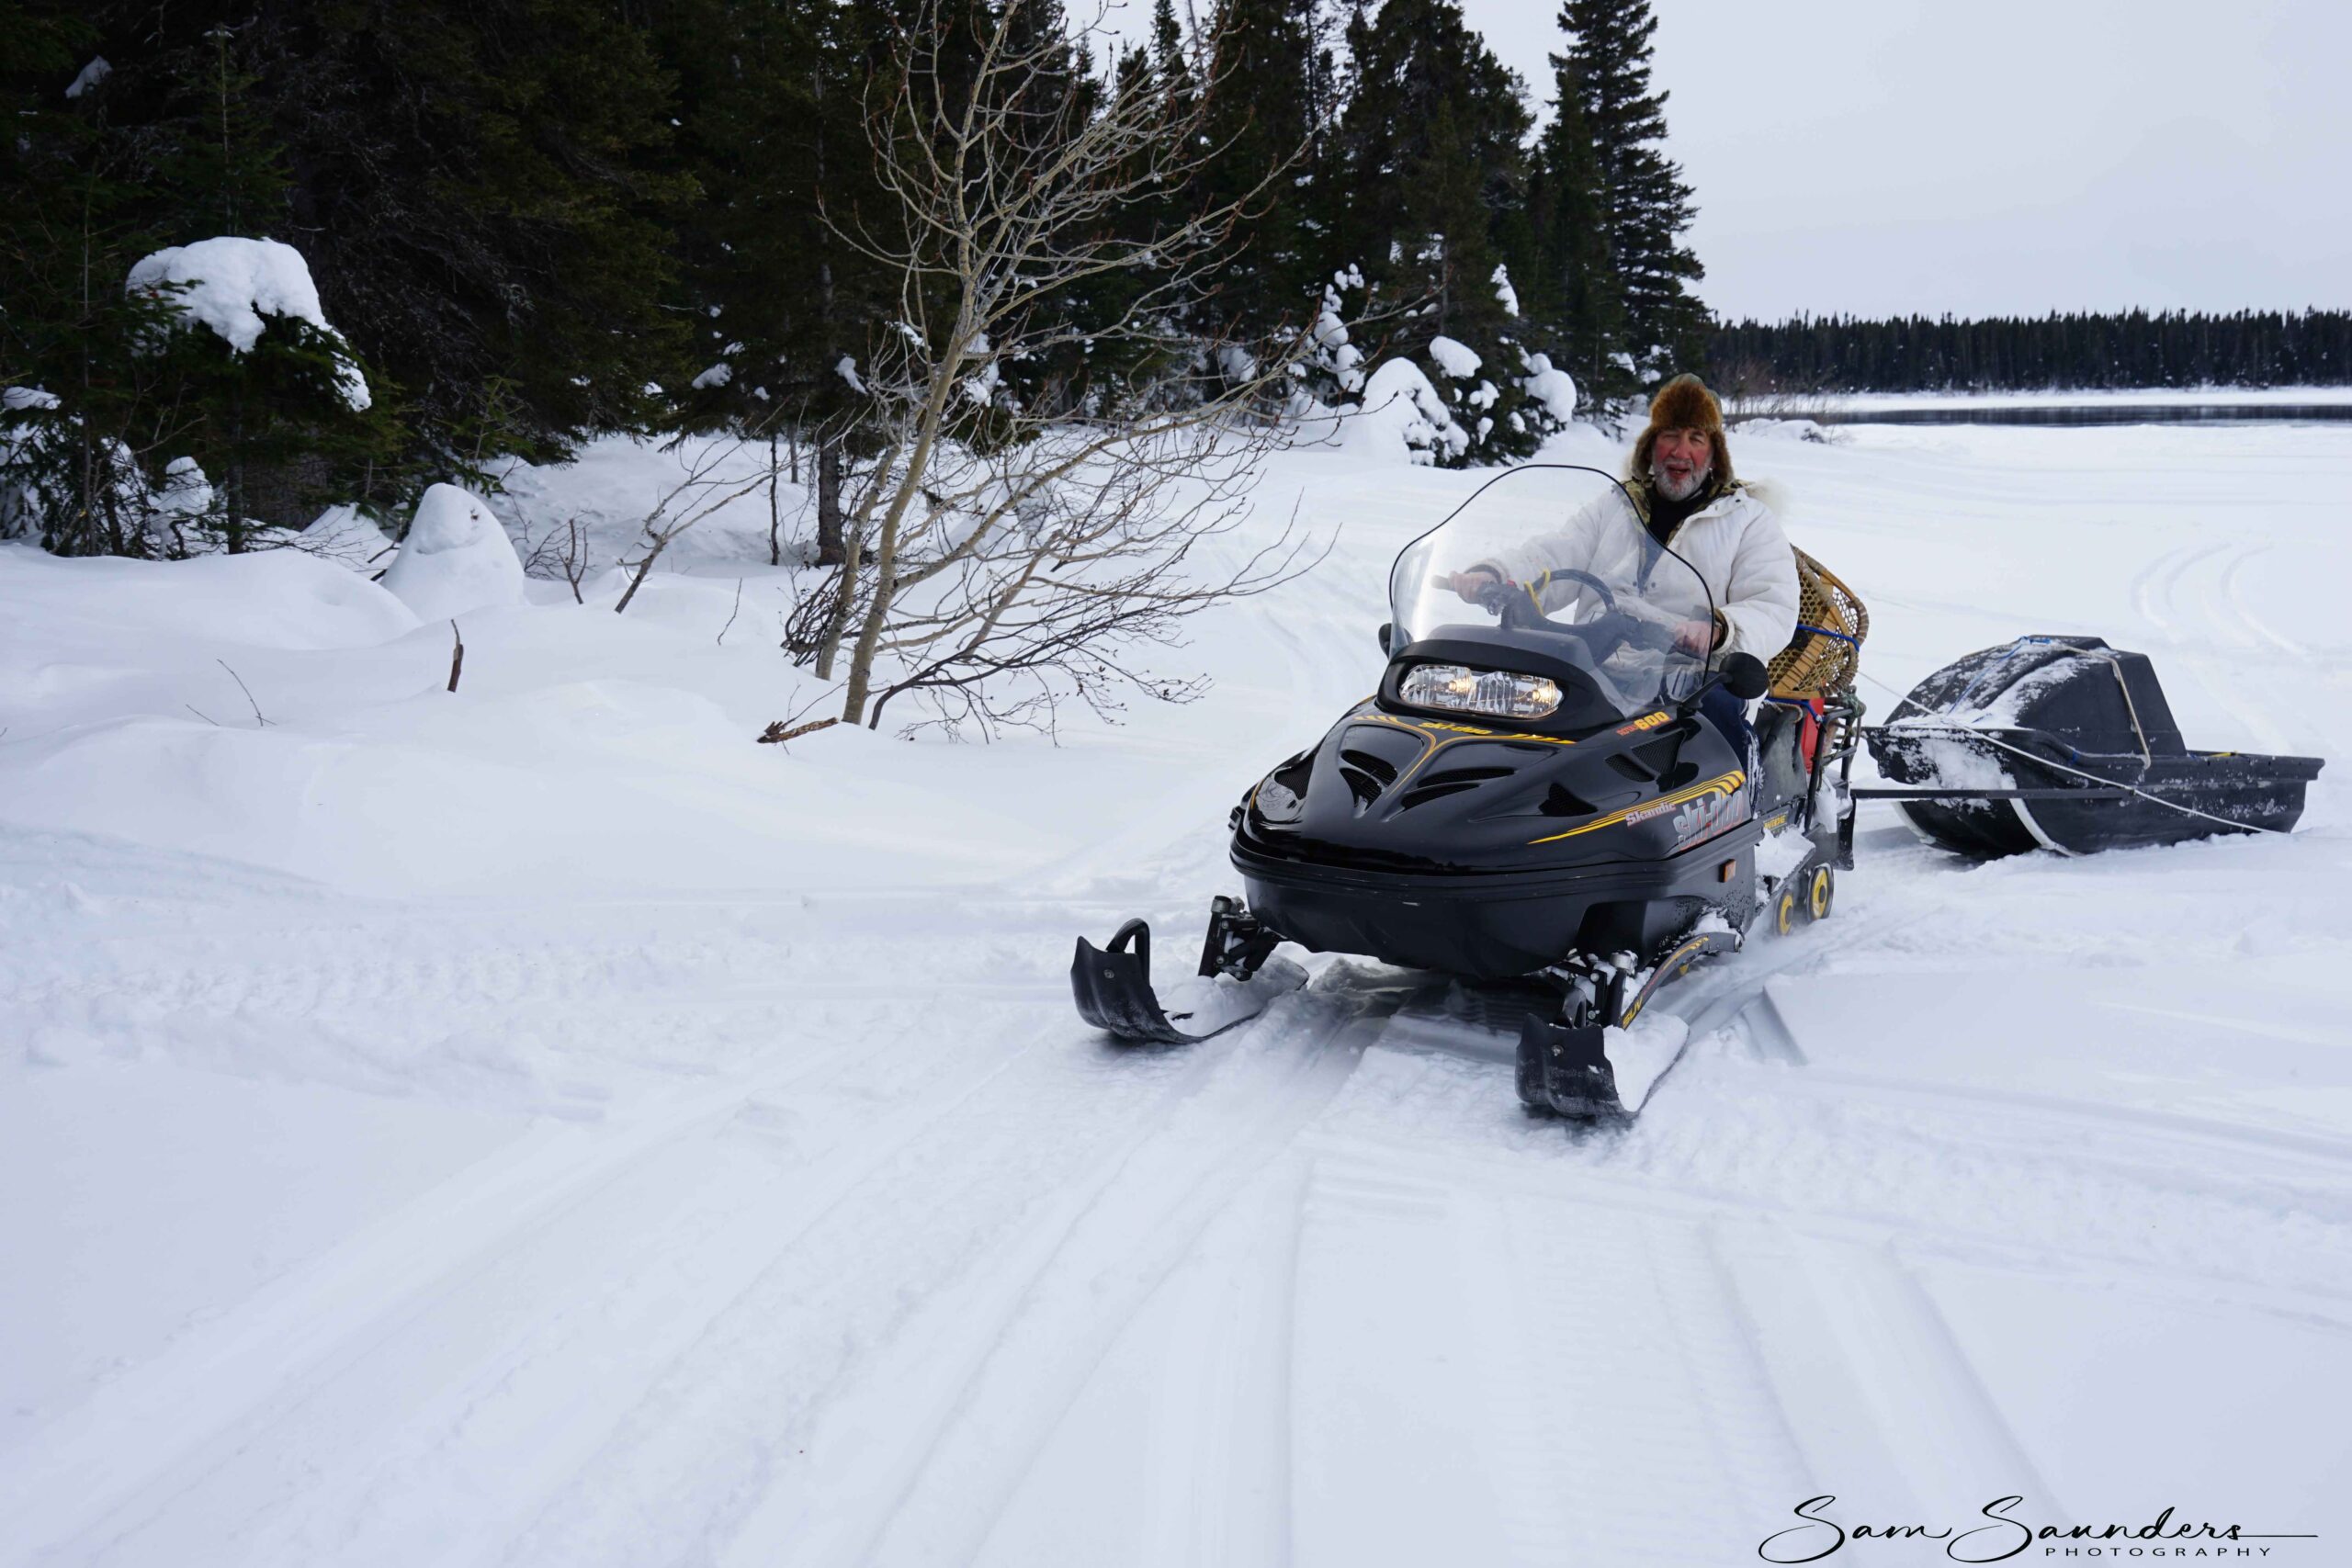 Sam Saunders driving a ski-doo